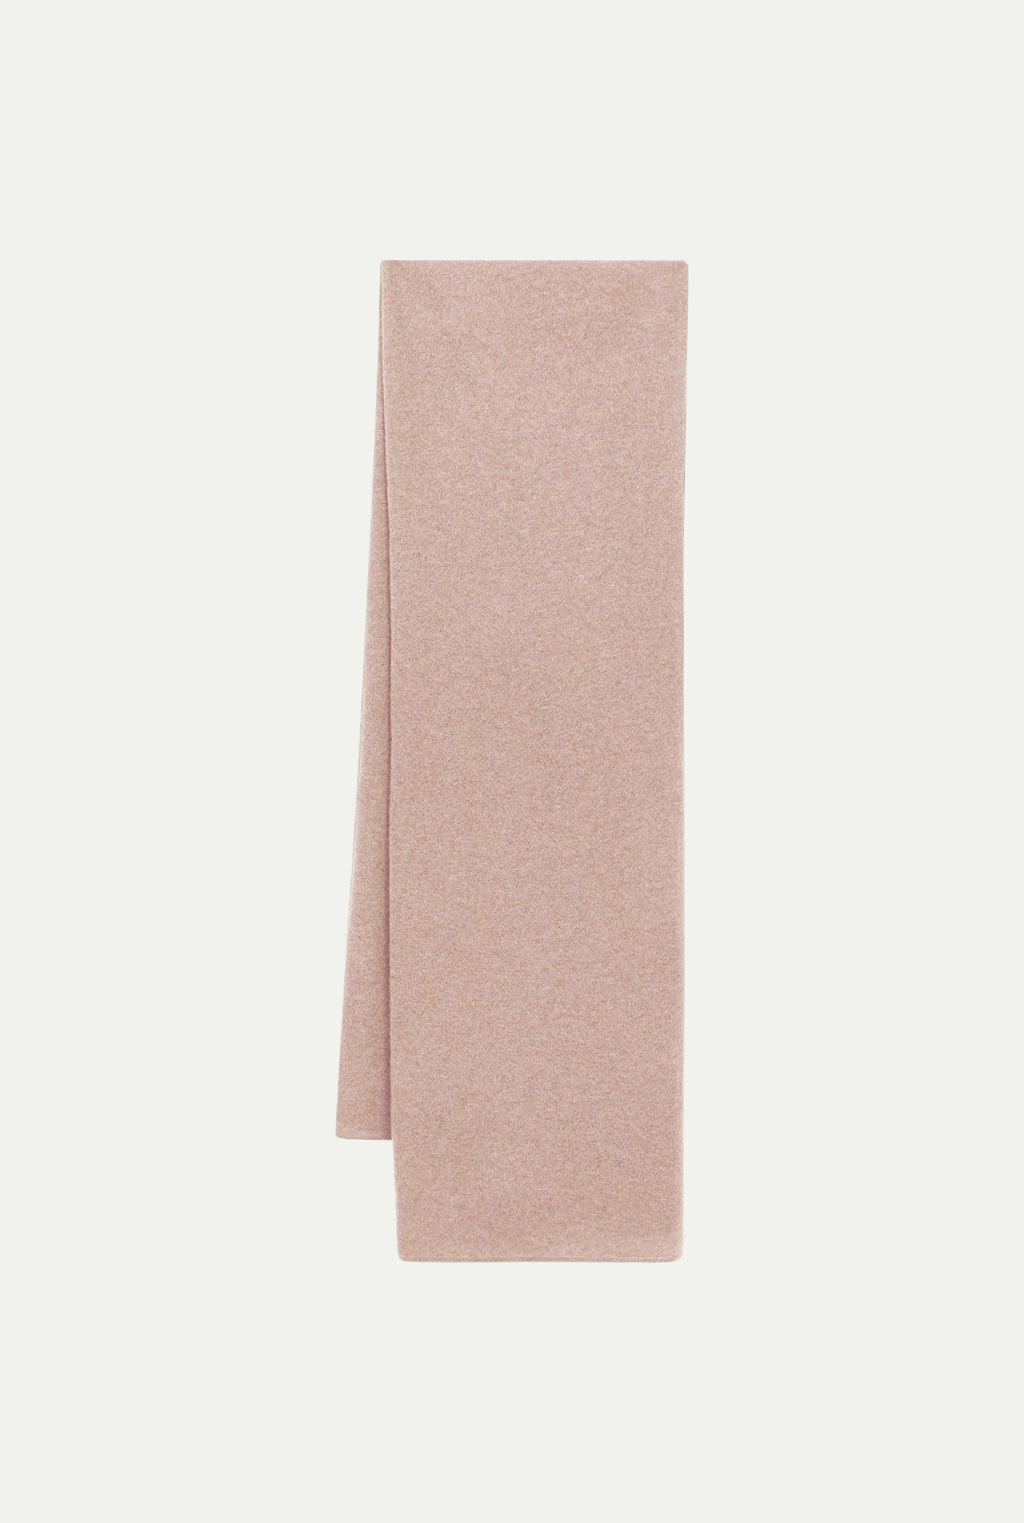 MERIBEL cashmere unisex scarf